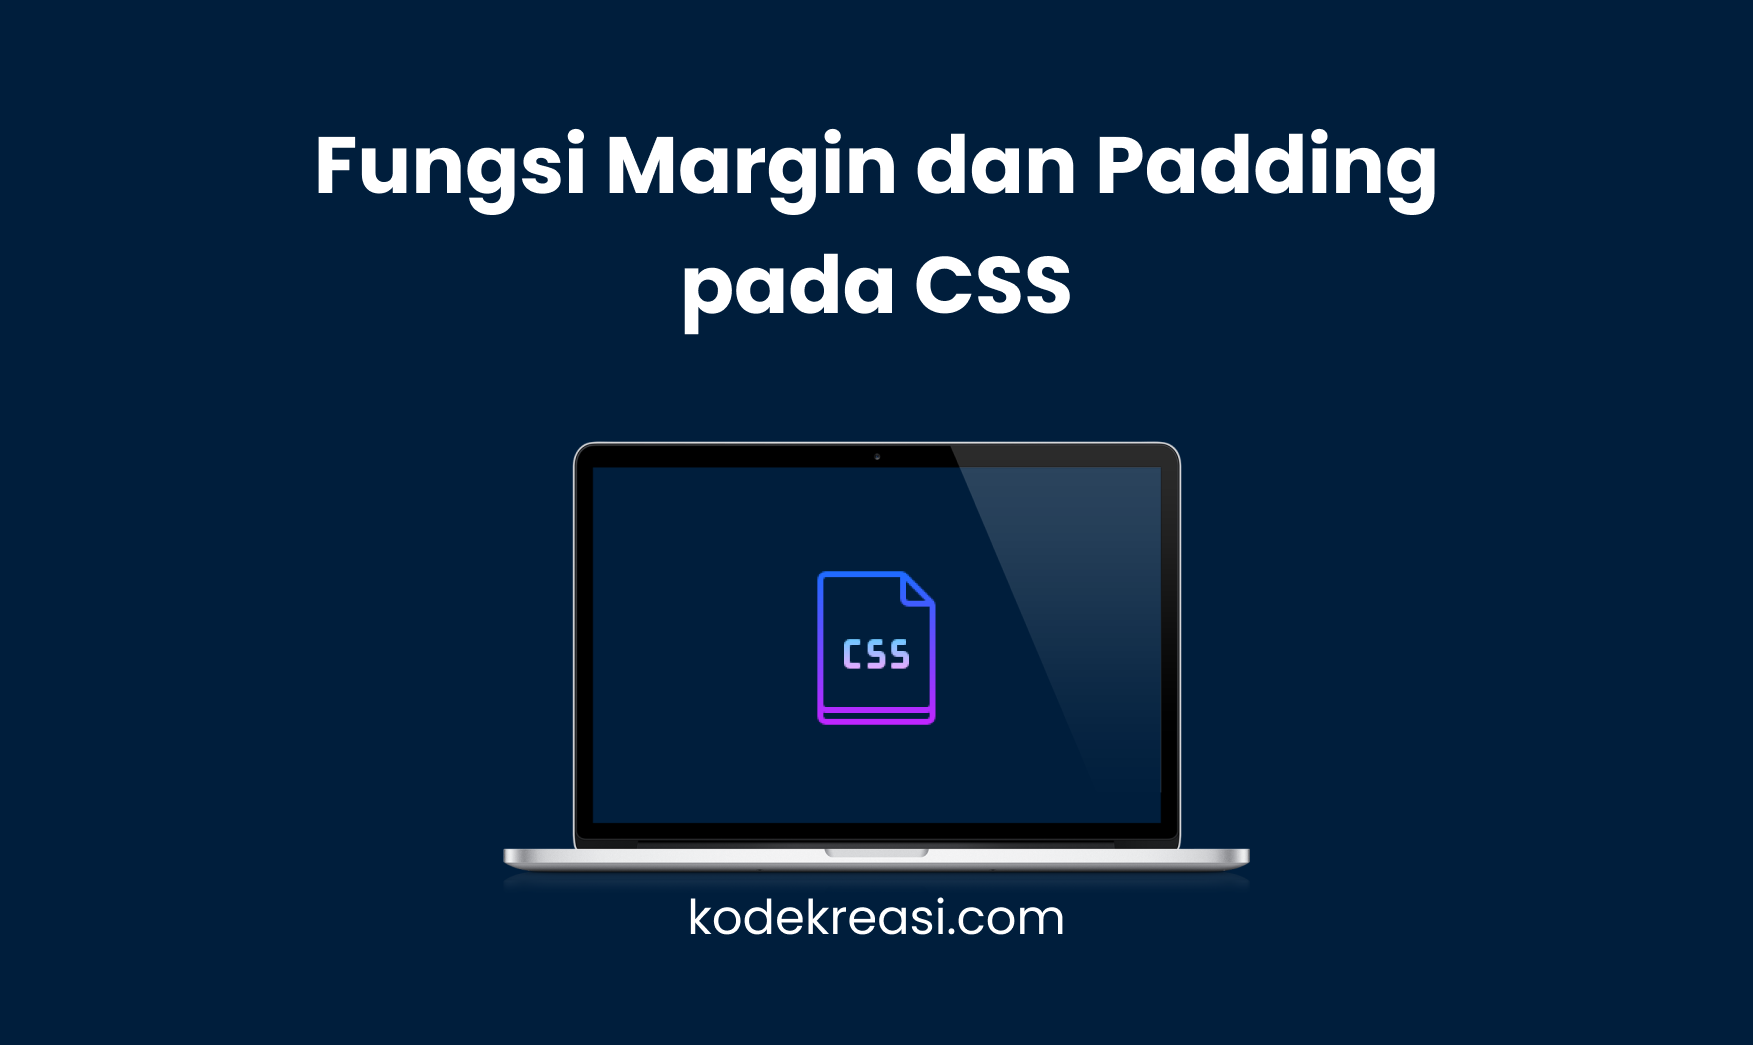 Fungsi Margin dan Padding pada CSS